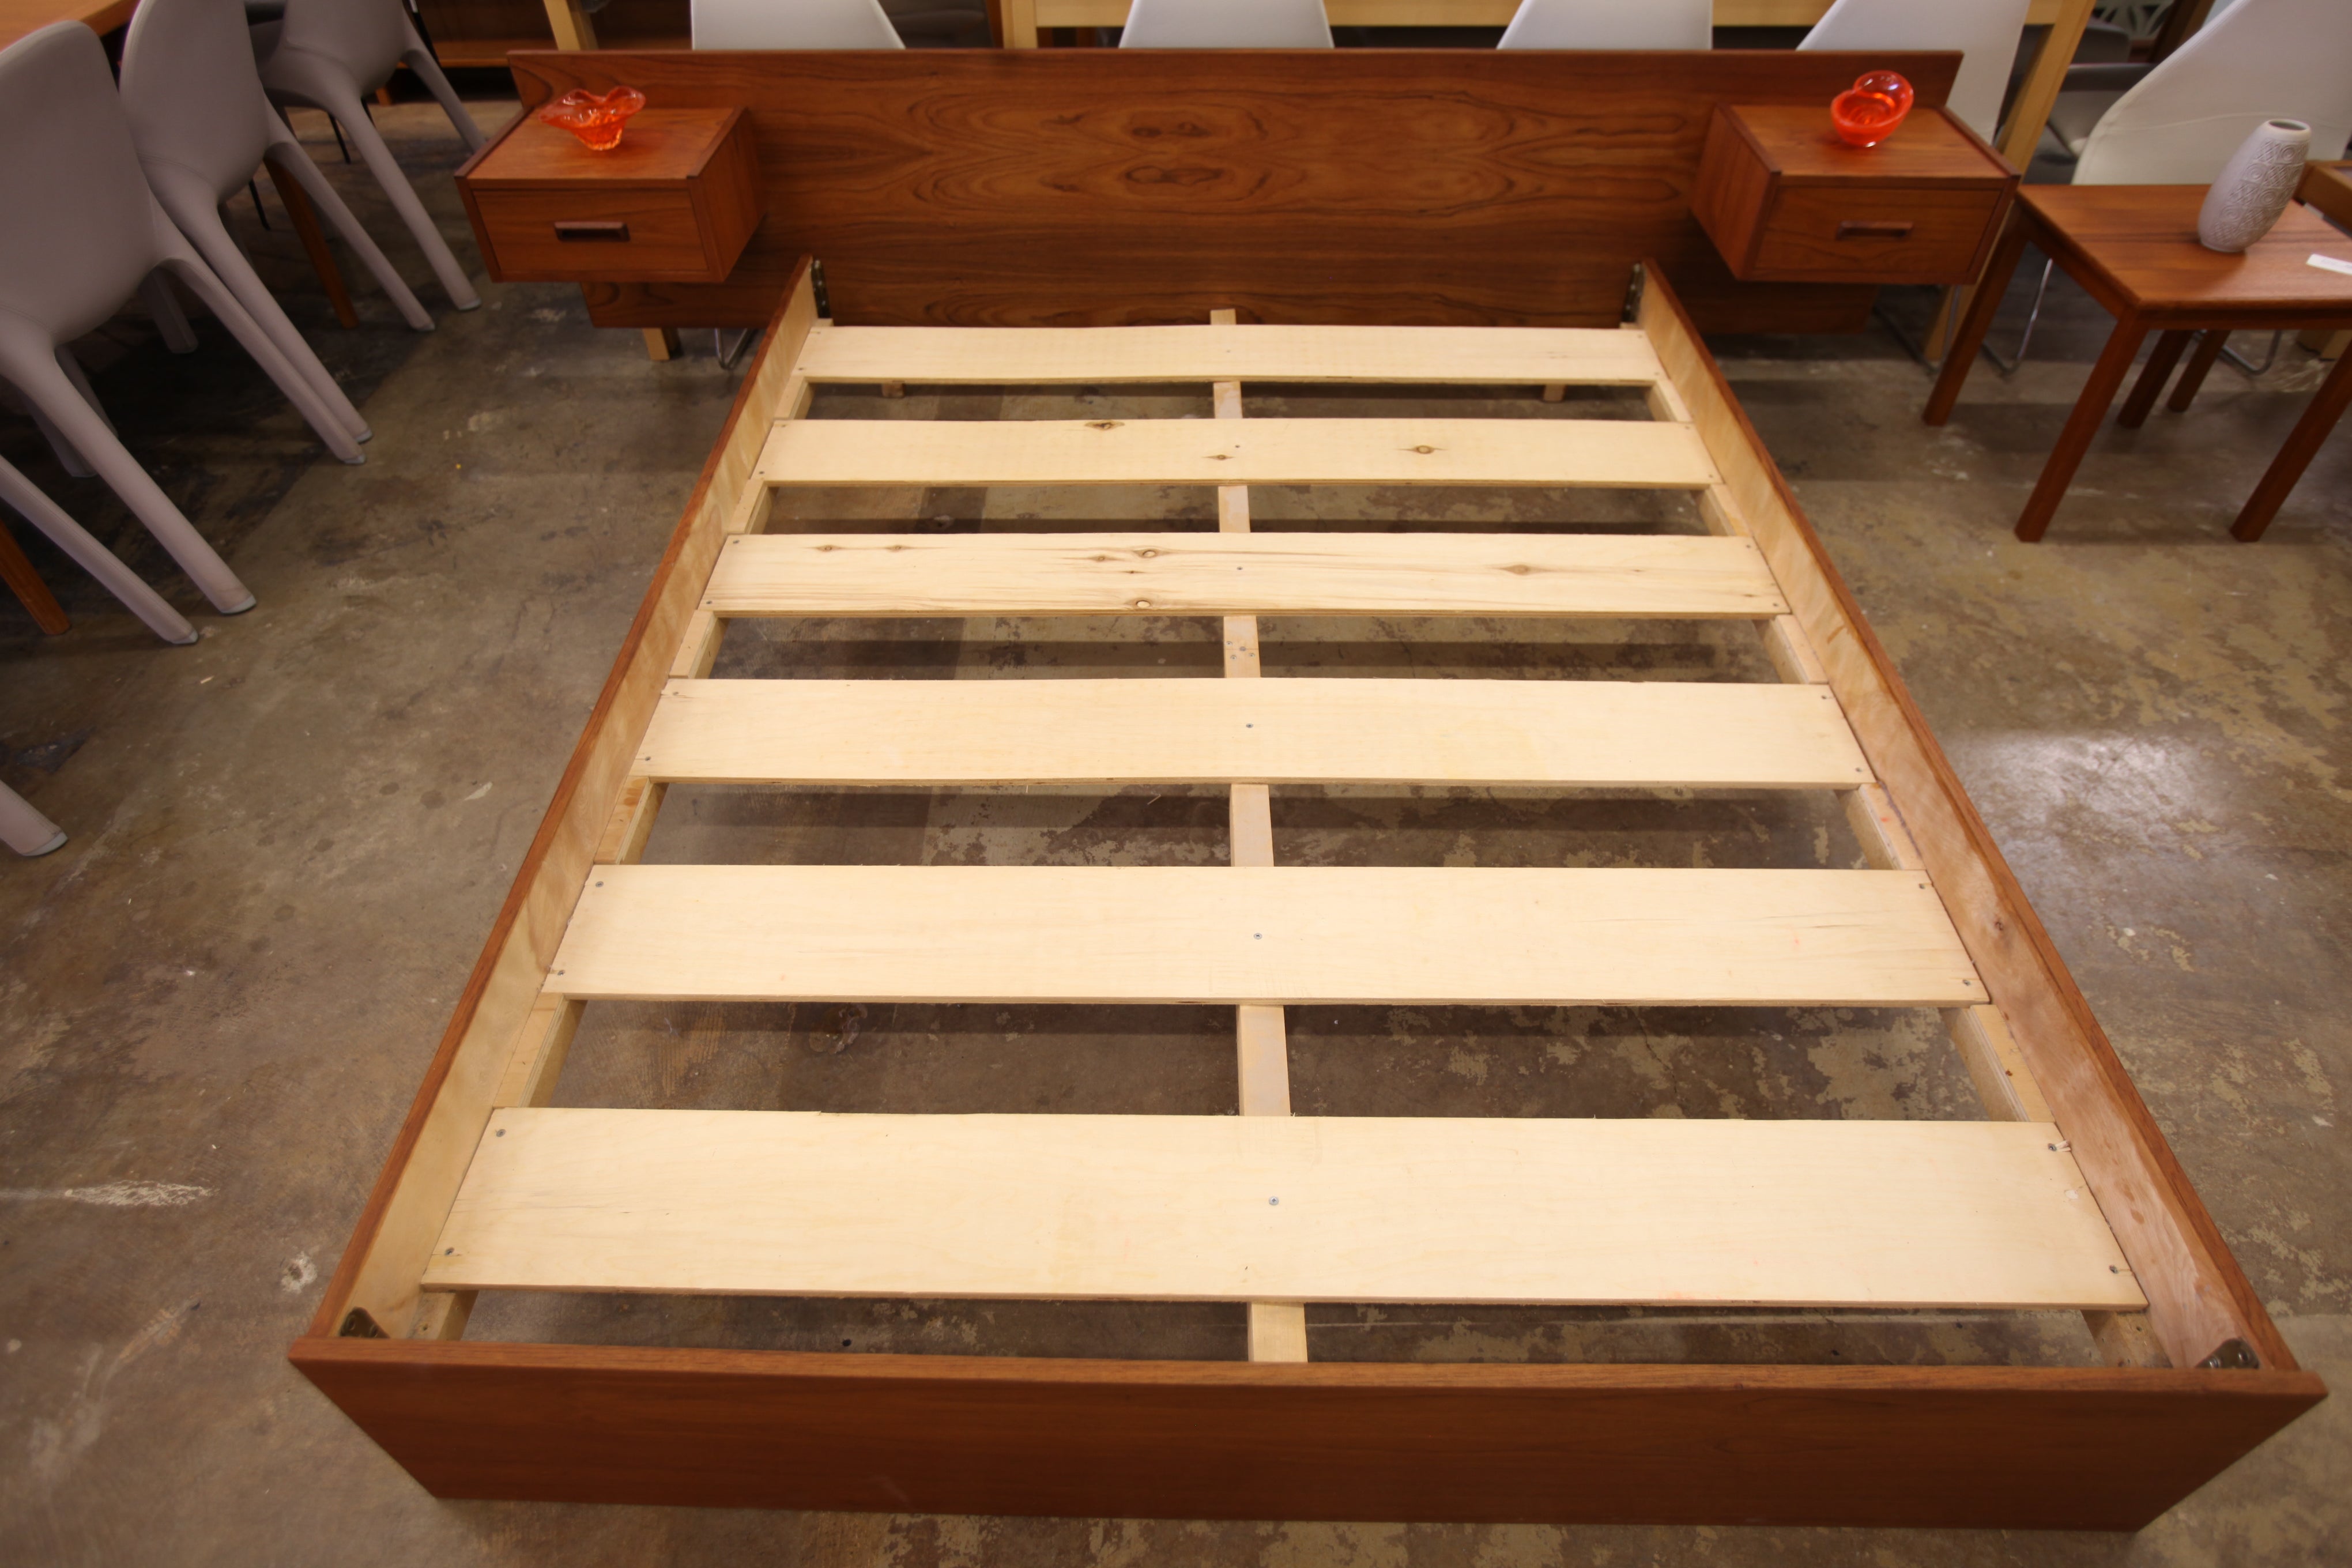 Vintage Teak Queen Bed w/ Floating Nightstands (96.25"W x 25.75"H x 81.5"D)